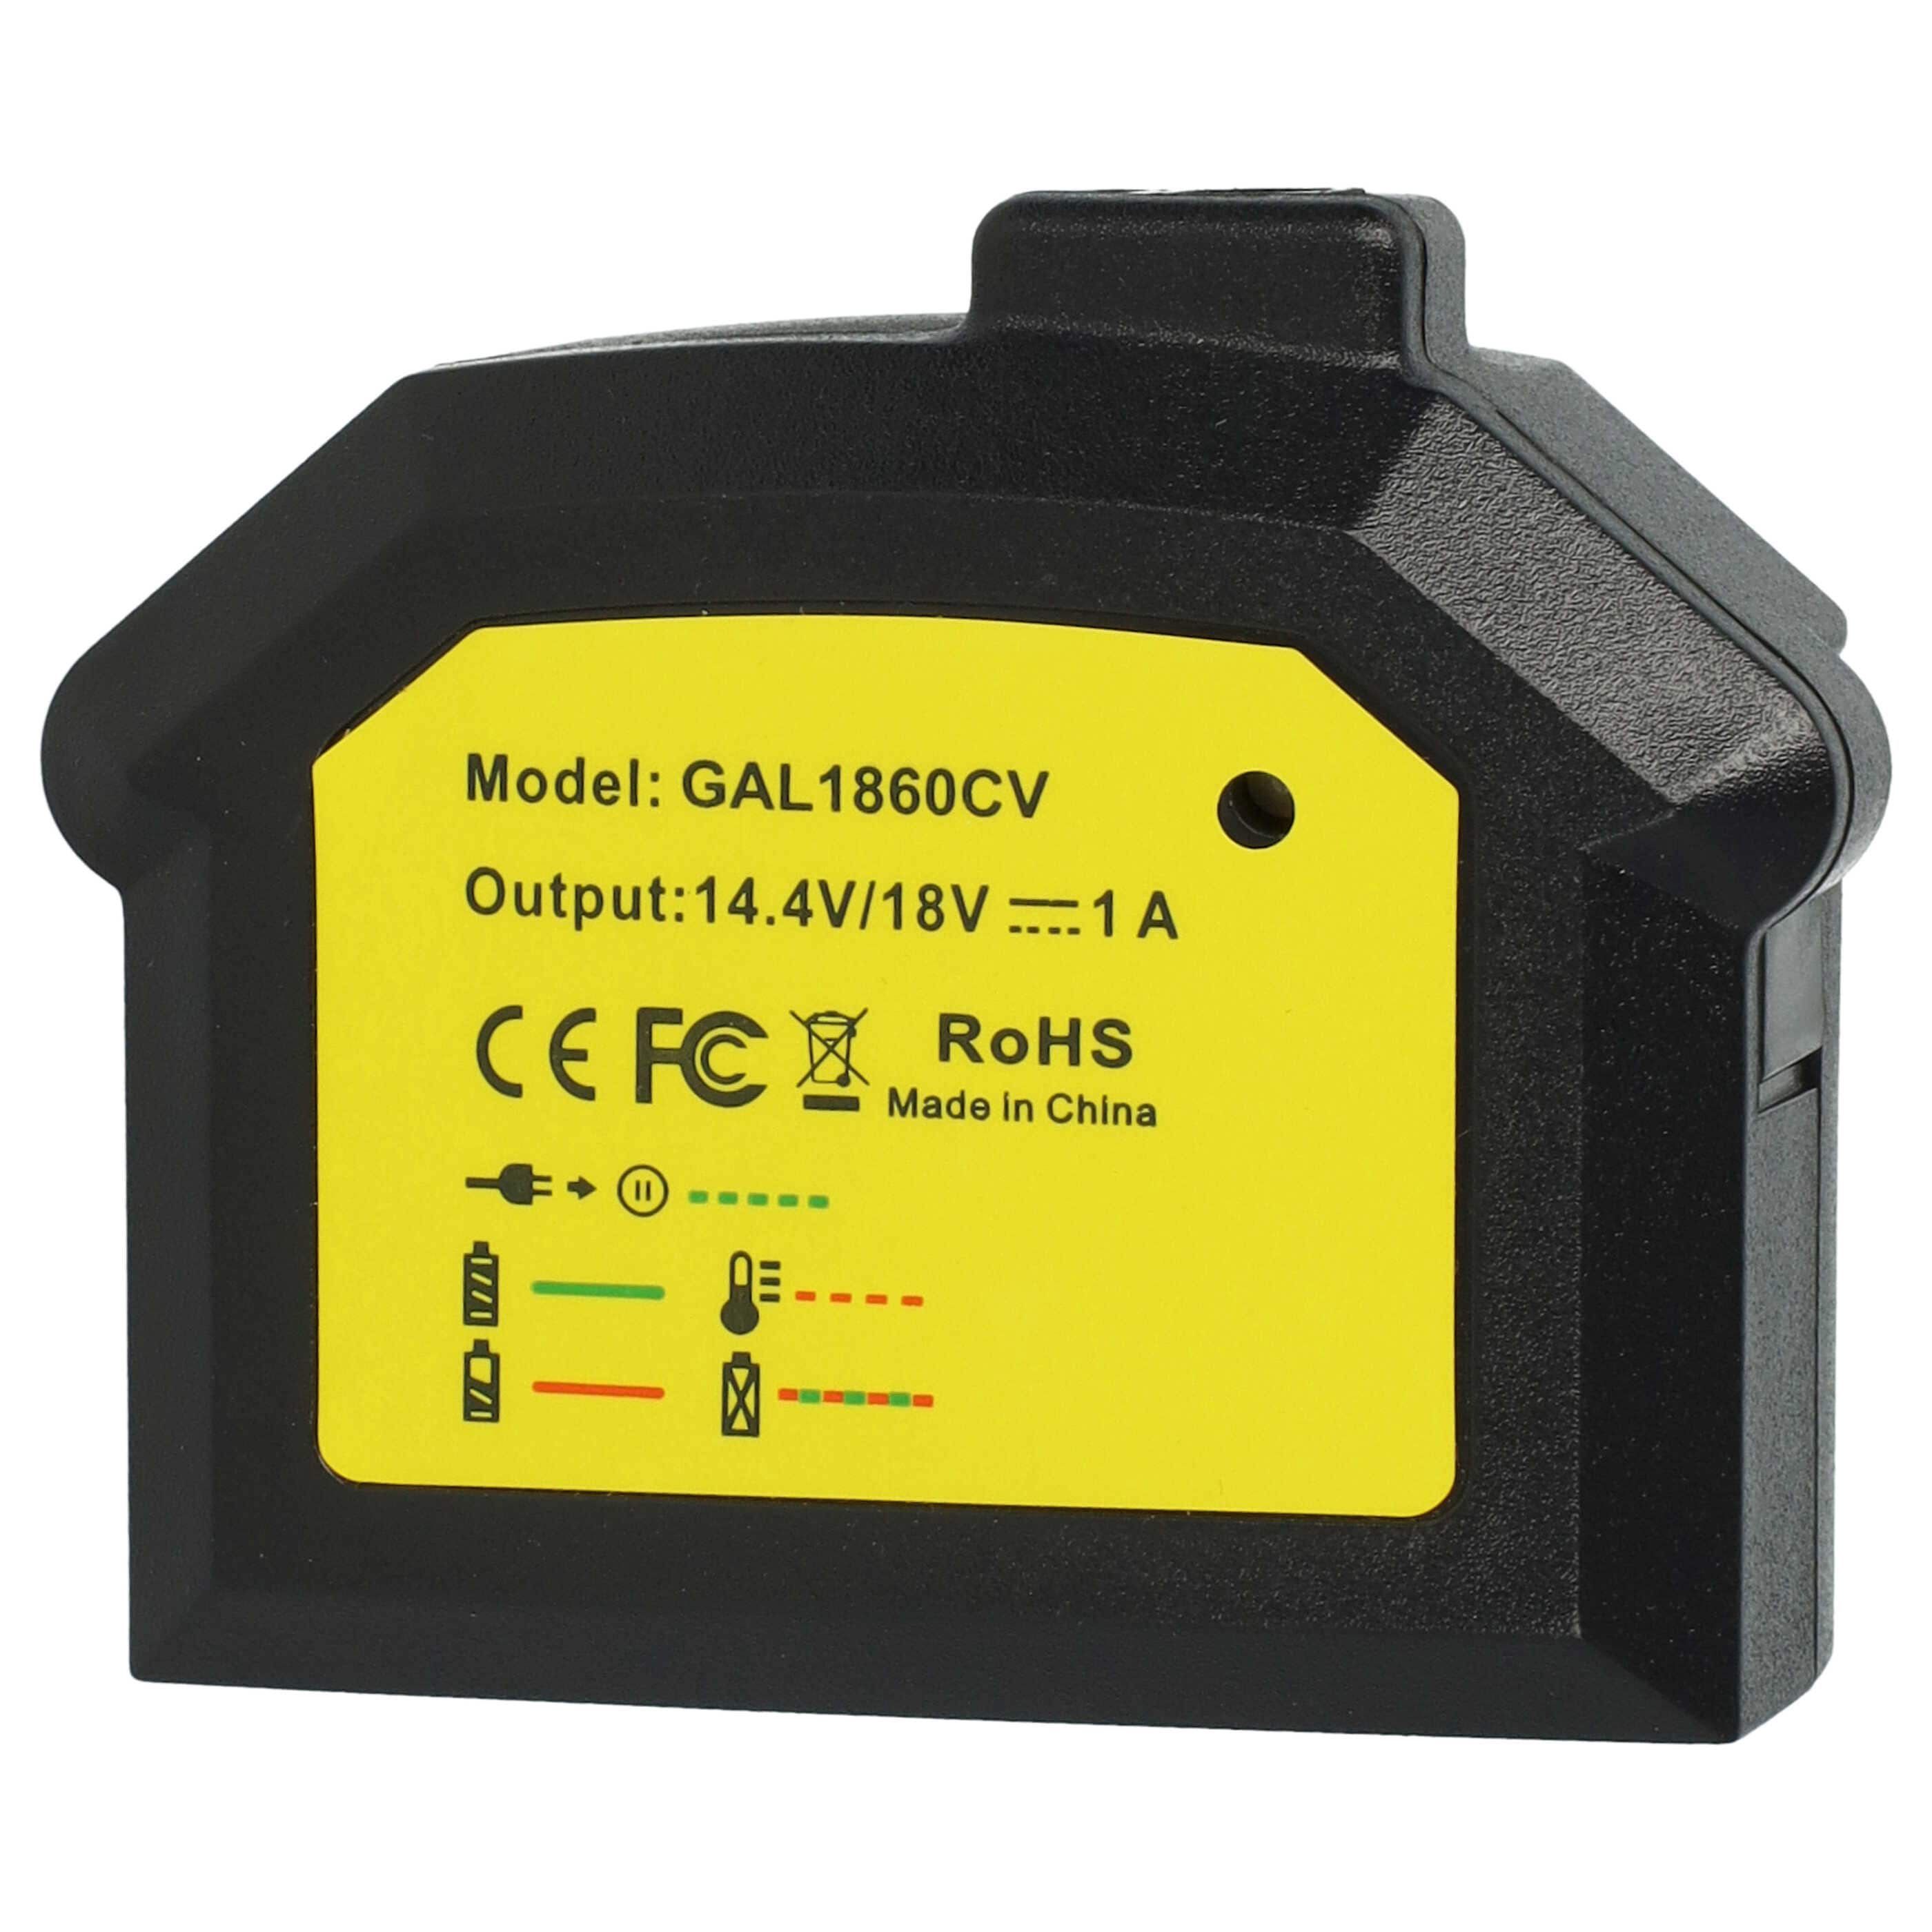 Caricabatterie per batterie utensile Bosch, GDR 14.4 V-LI - 16,8 V / 1,5 A